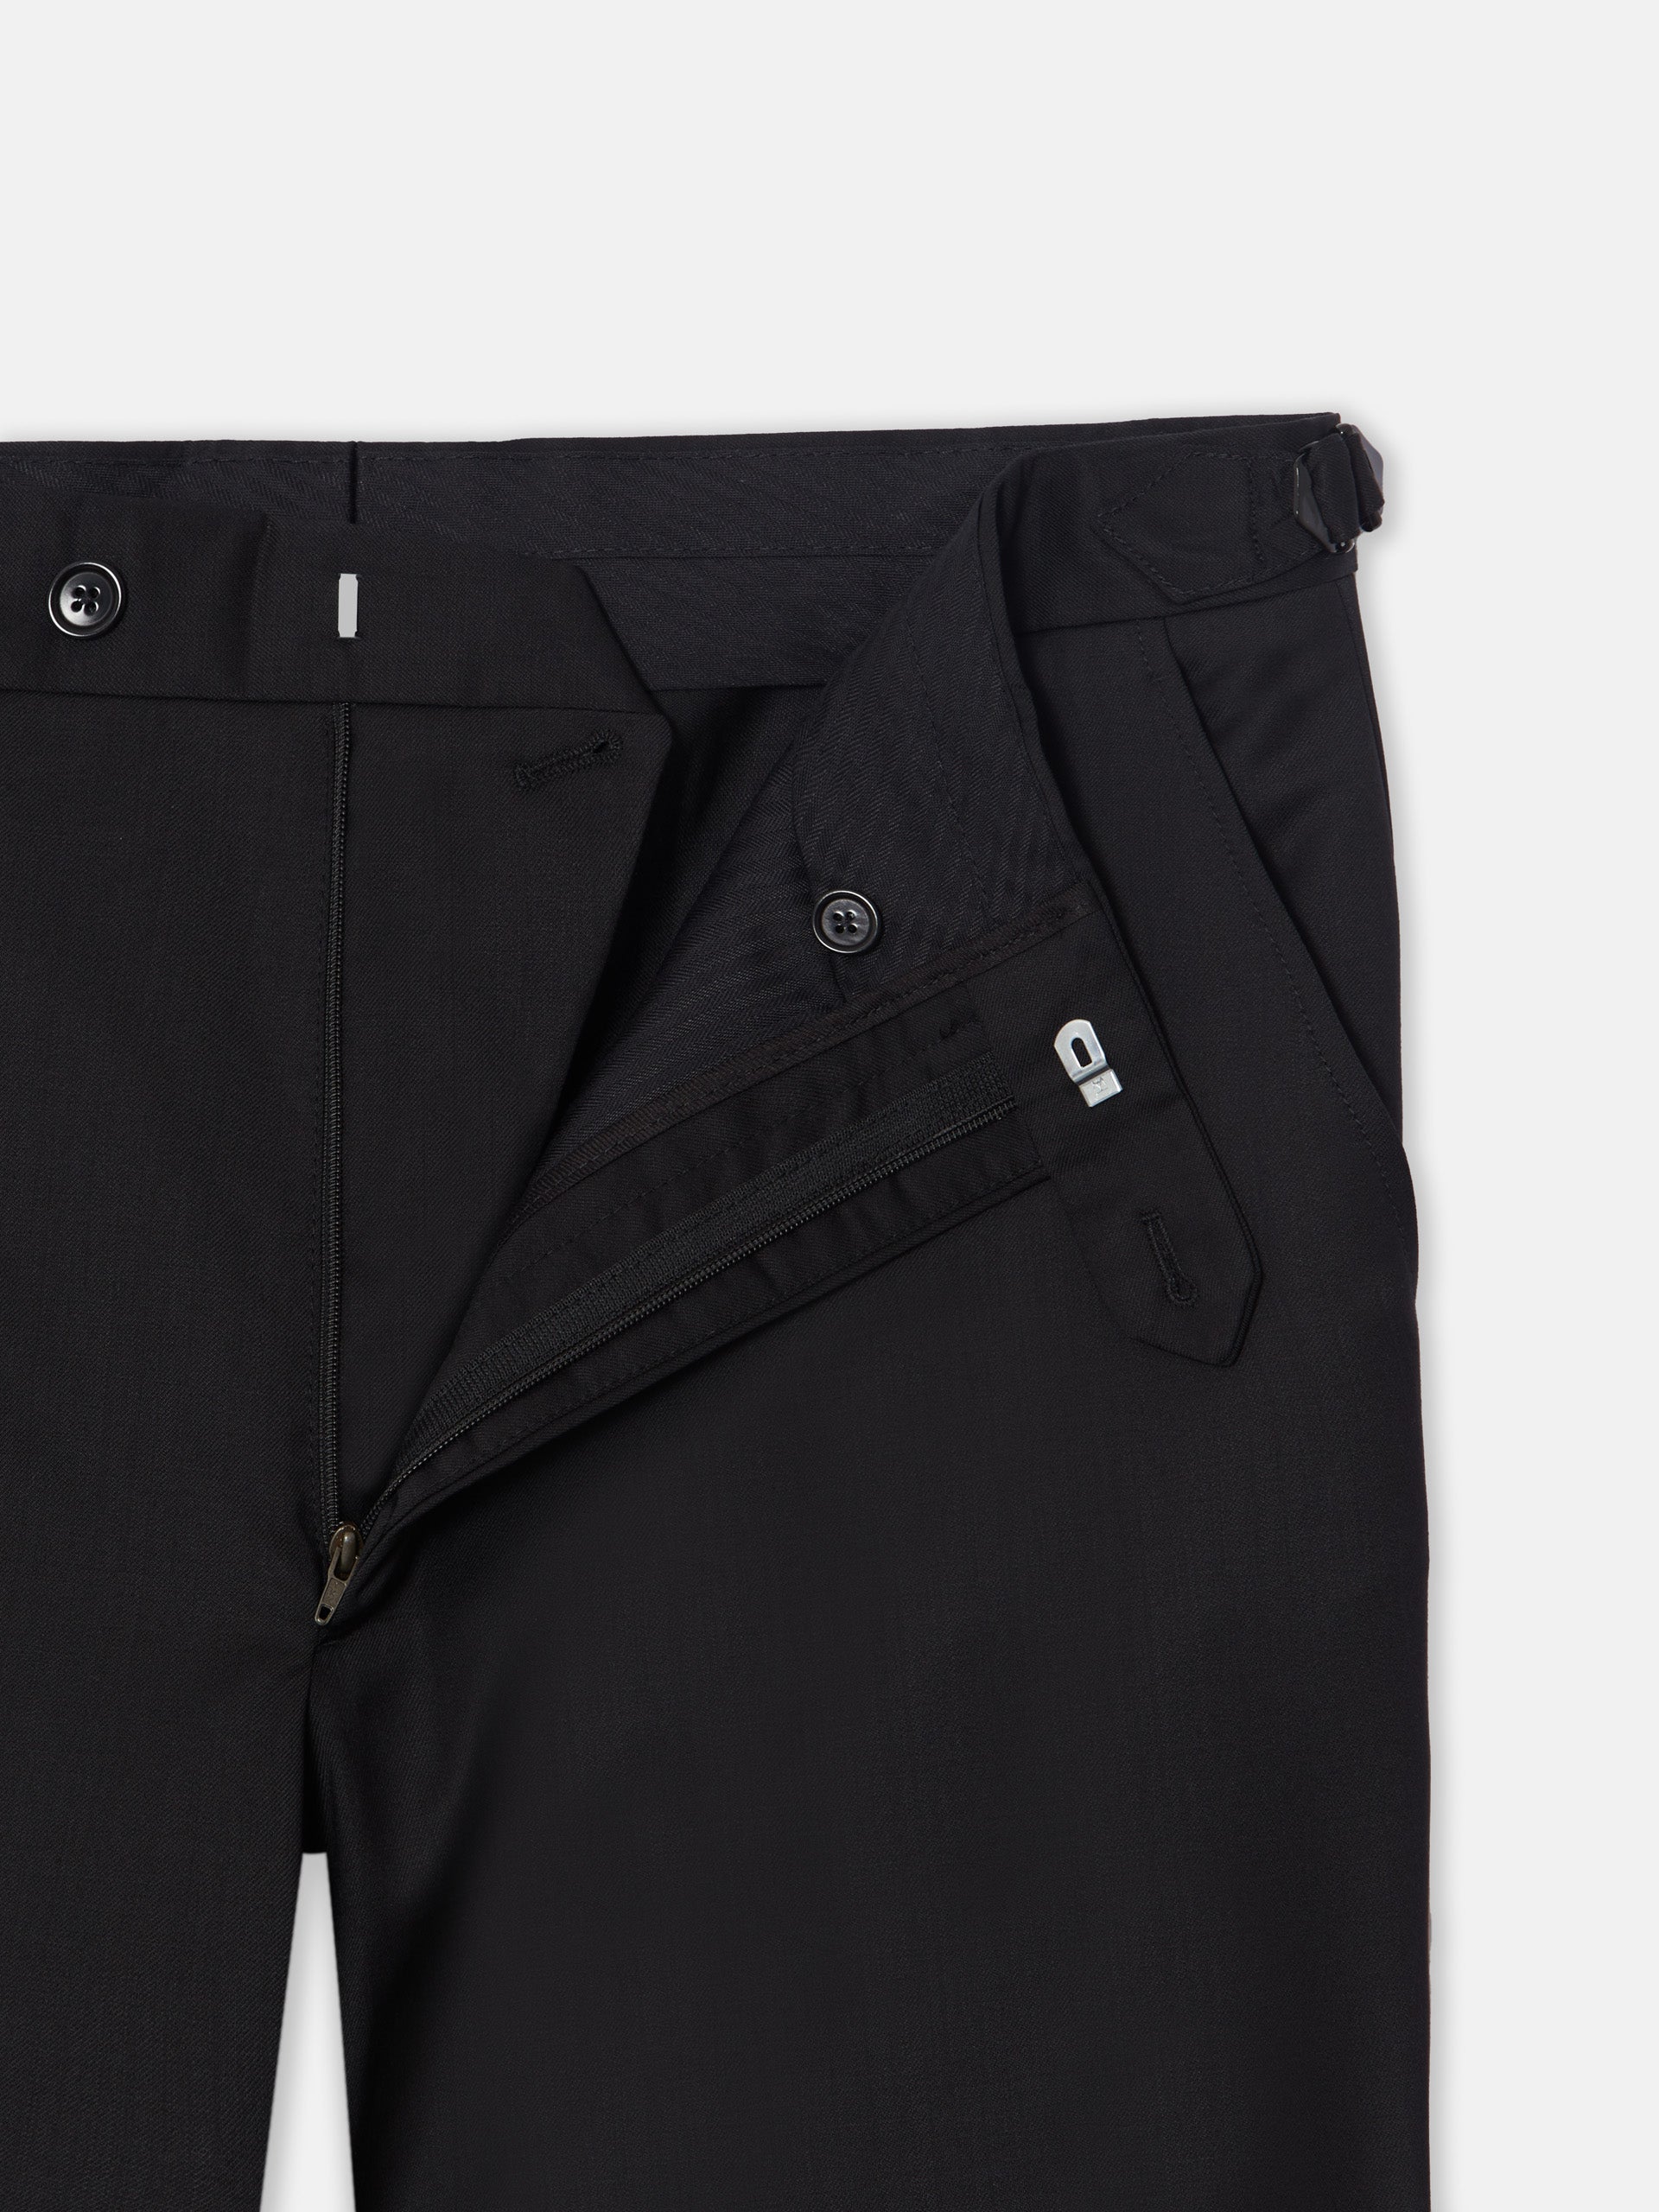 Pantalon esmoquin classic negro